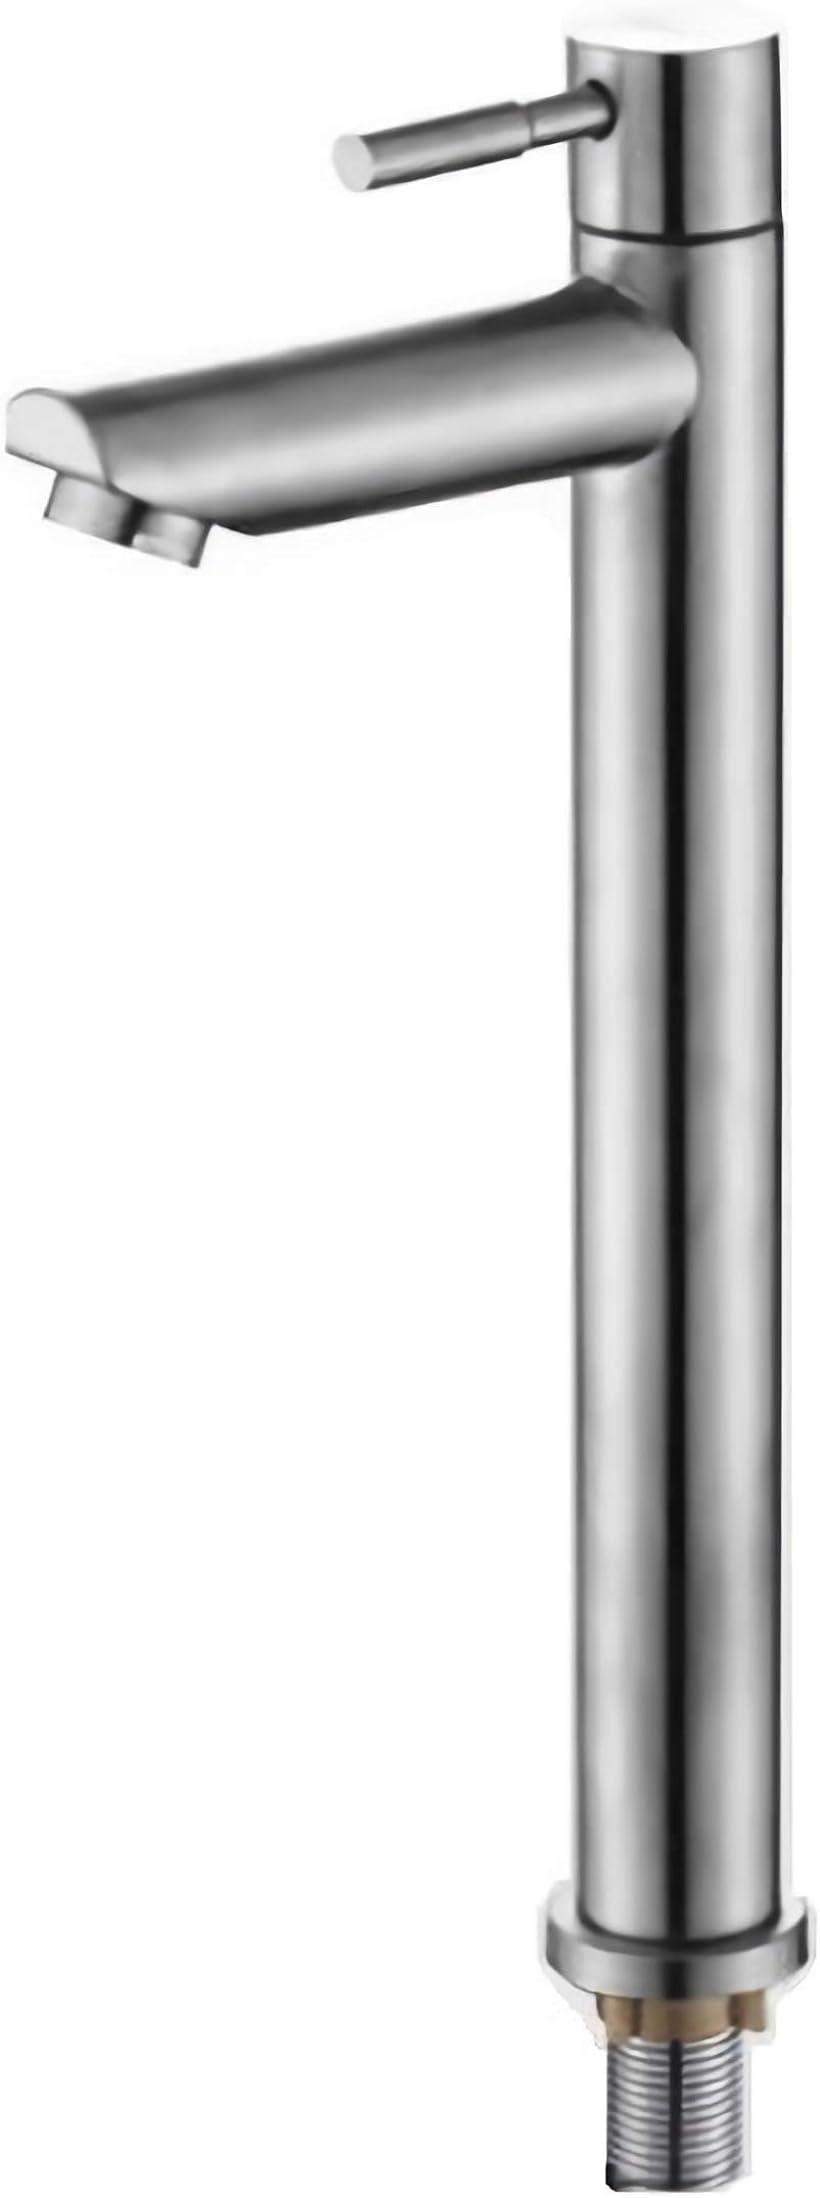 洗面用 B型 シングルレバー 単水栓 ステンレス製 ロング水栓 蛇口 立水栓 手洗いボウル 高さ305mm( B型 高さ305mm 単水栓)